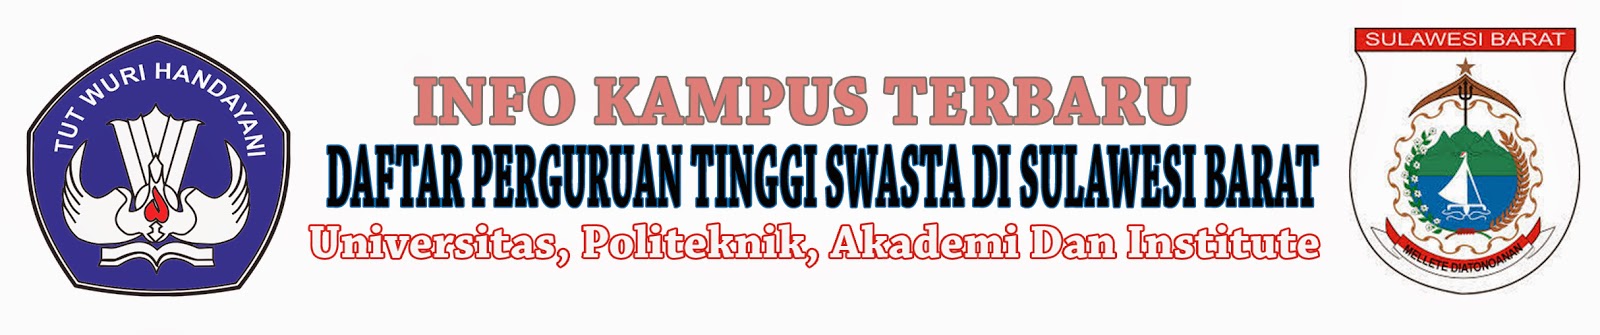 Daftar Perguruan Tinggi Swasta Di Sulawesi Barat | Info Kampus Terbaru | Informasi Seputar Dunia ...